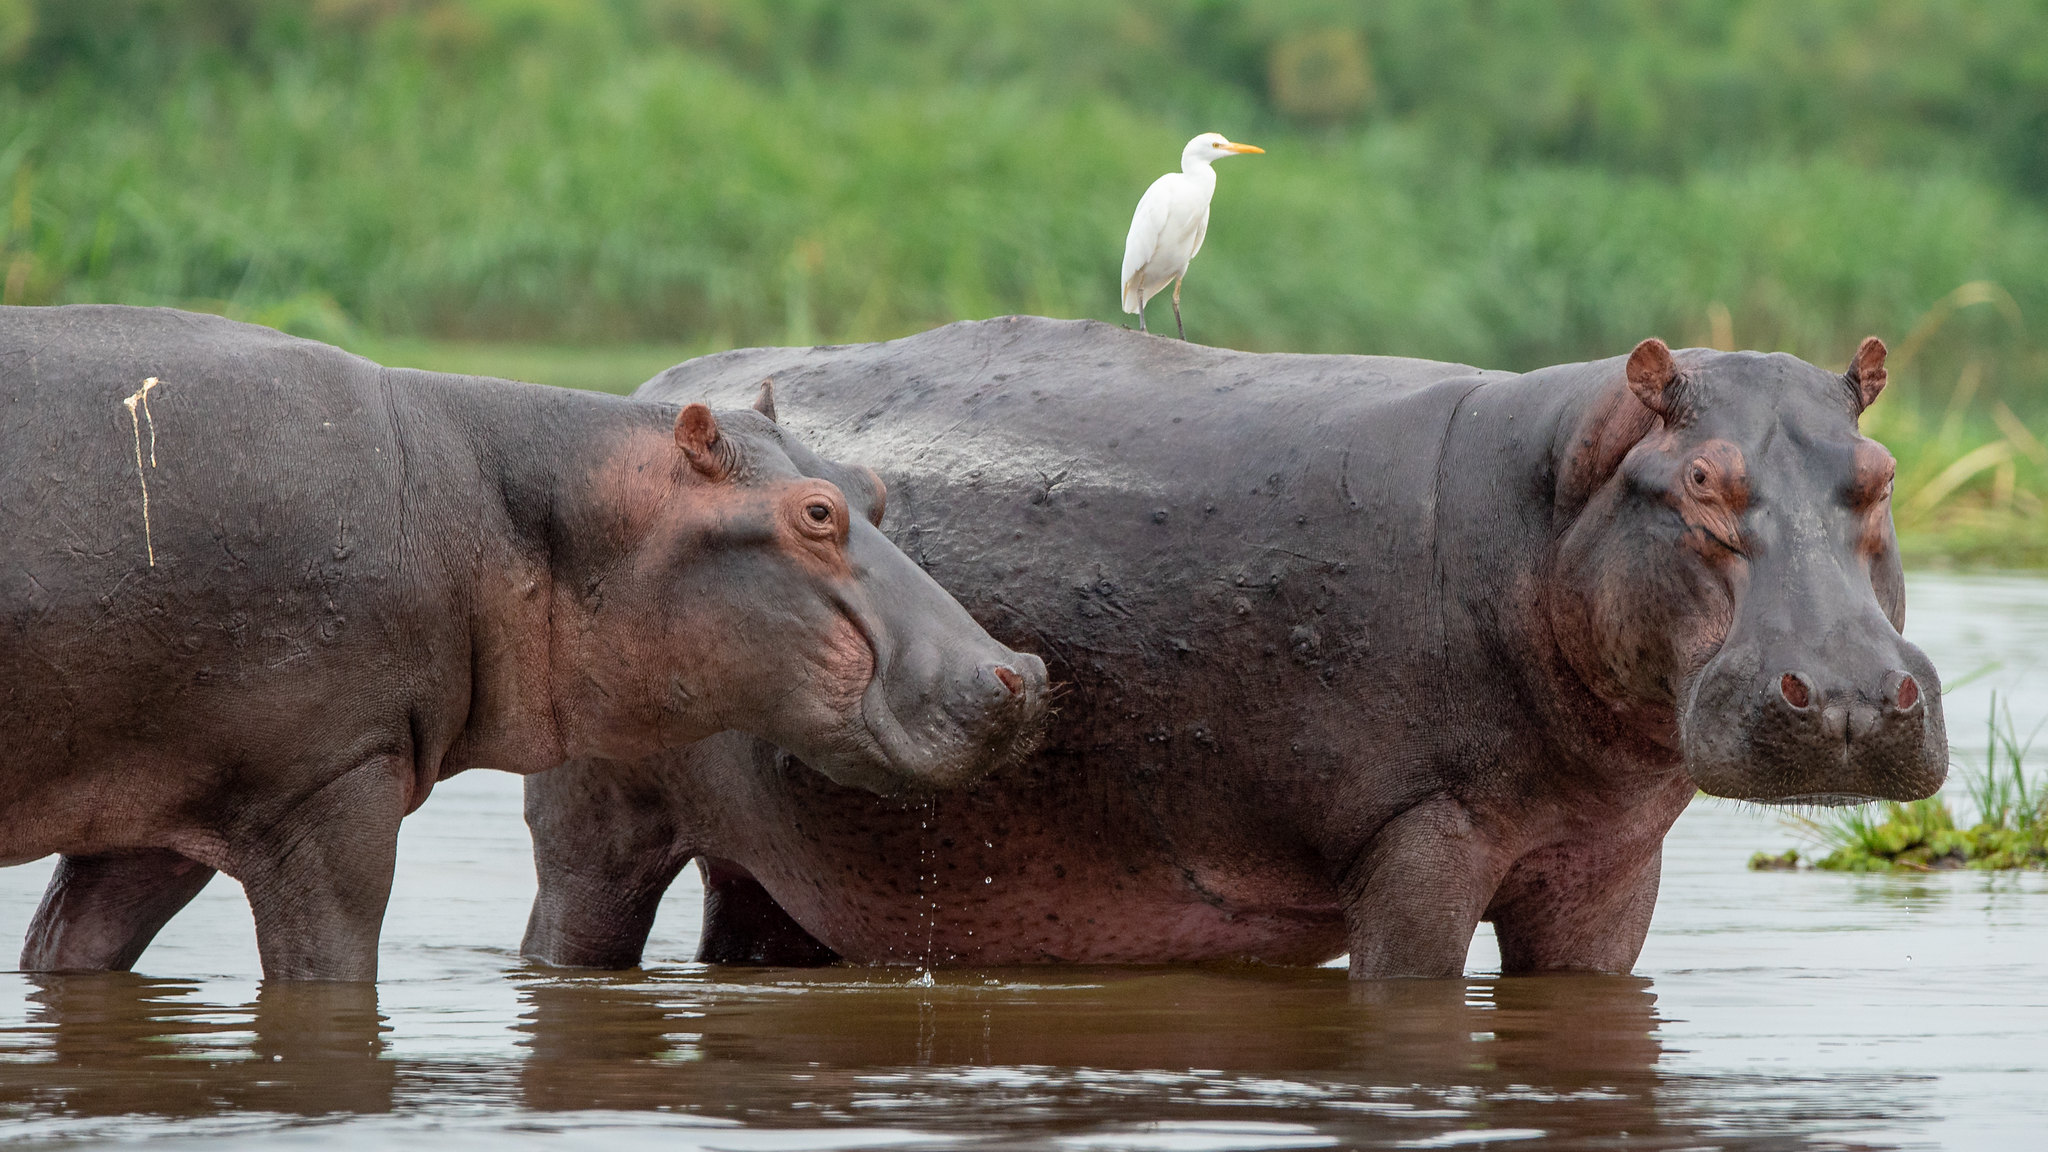 uganda safaris